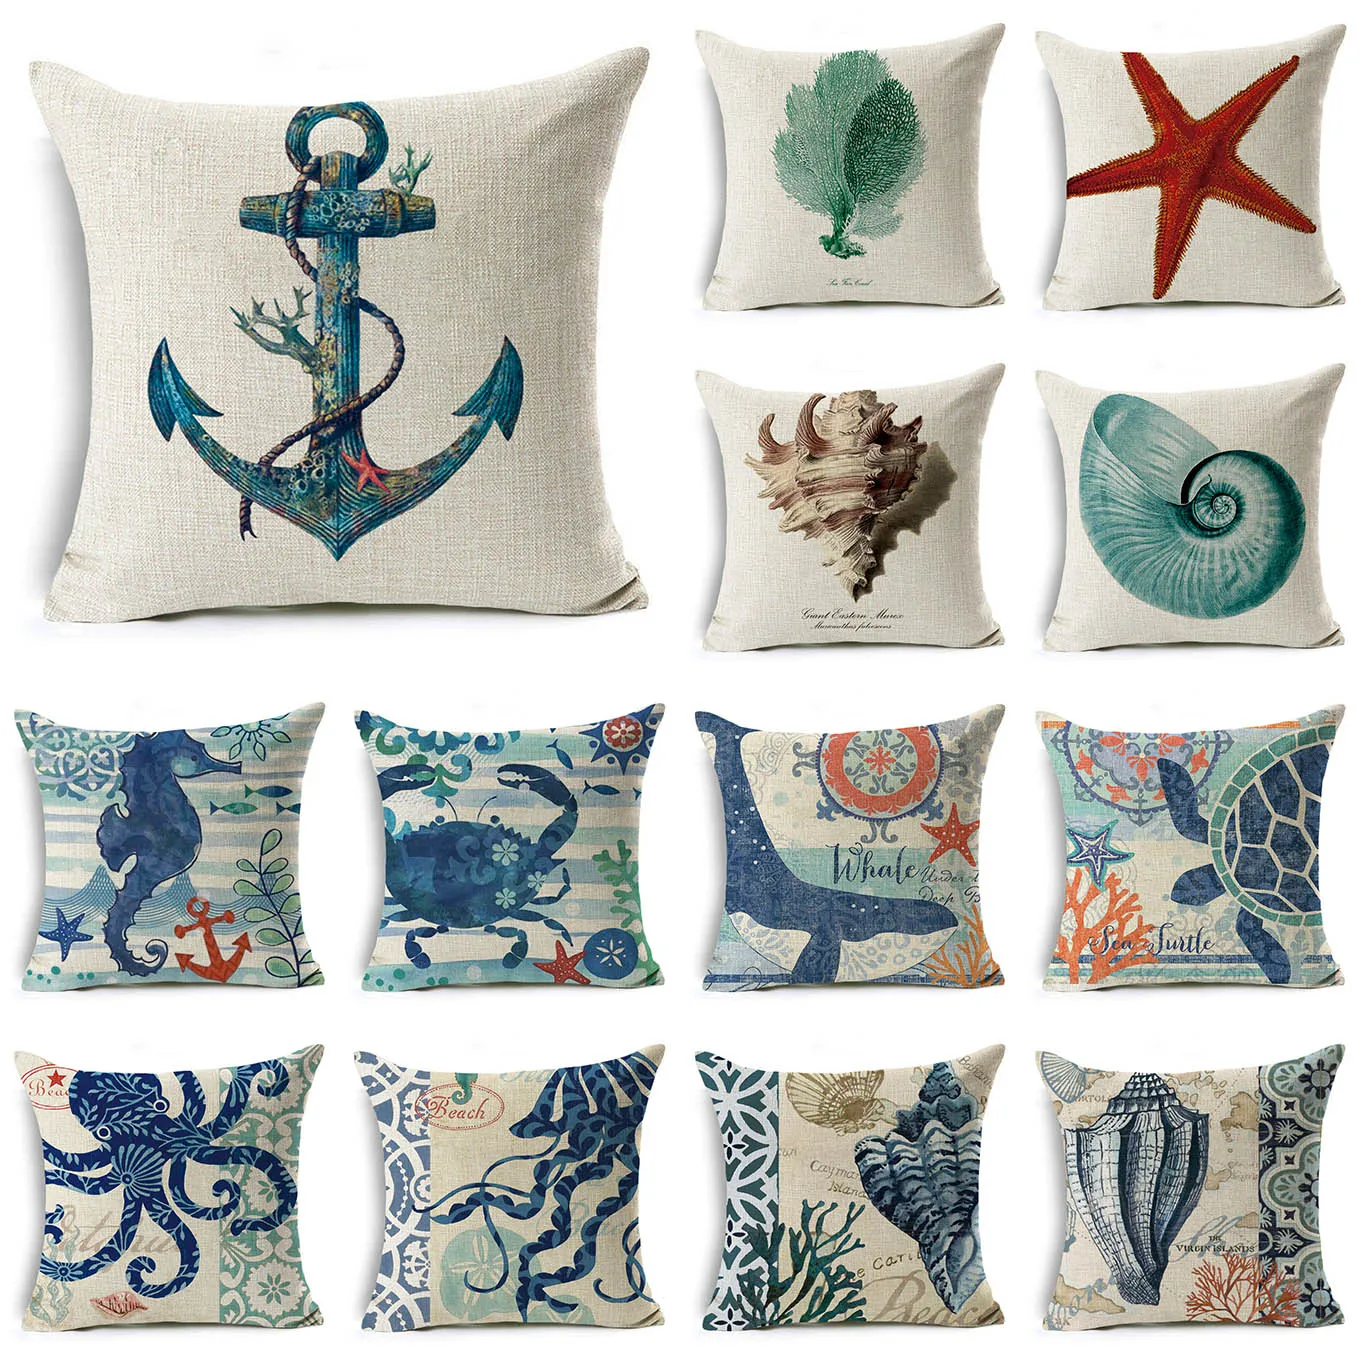 

Nordic Blue Marine Ocean Life Pillow Case Starfish Seahorse Anchor Linen Pillows Covers Sofa Home Decor 45x45 50x50 Pillowcase